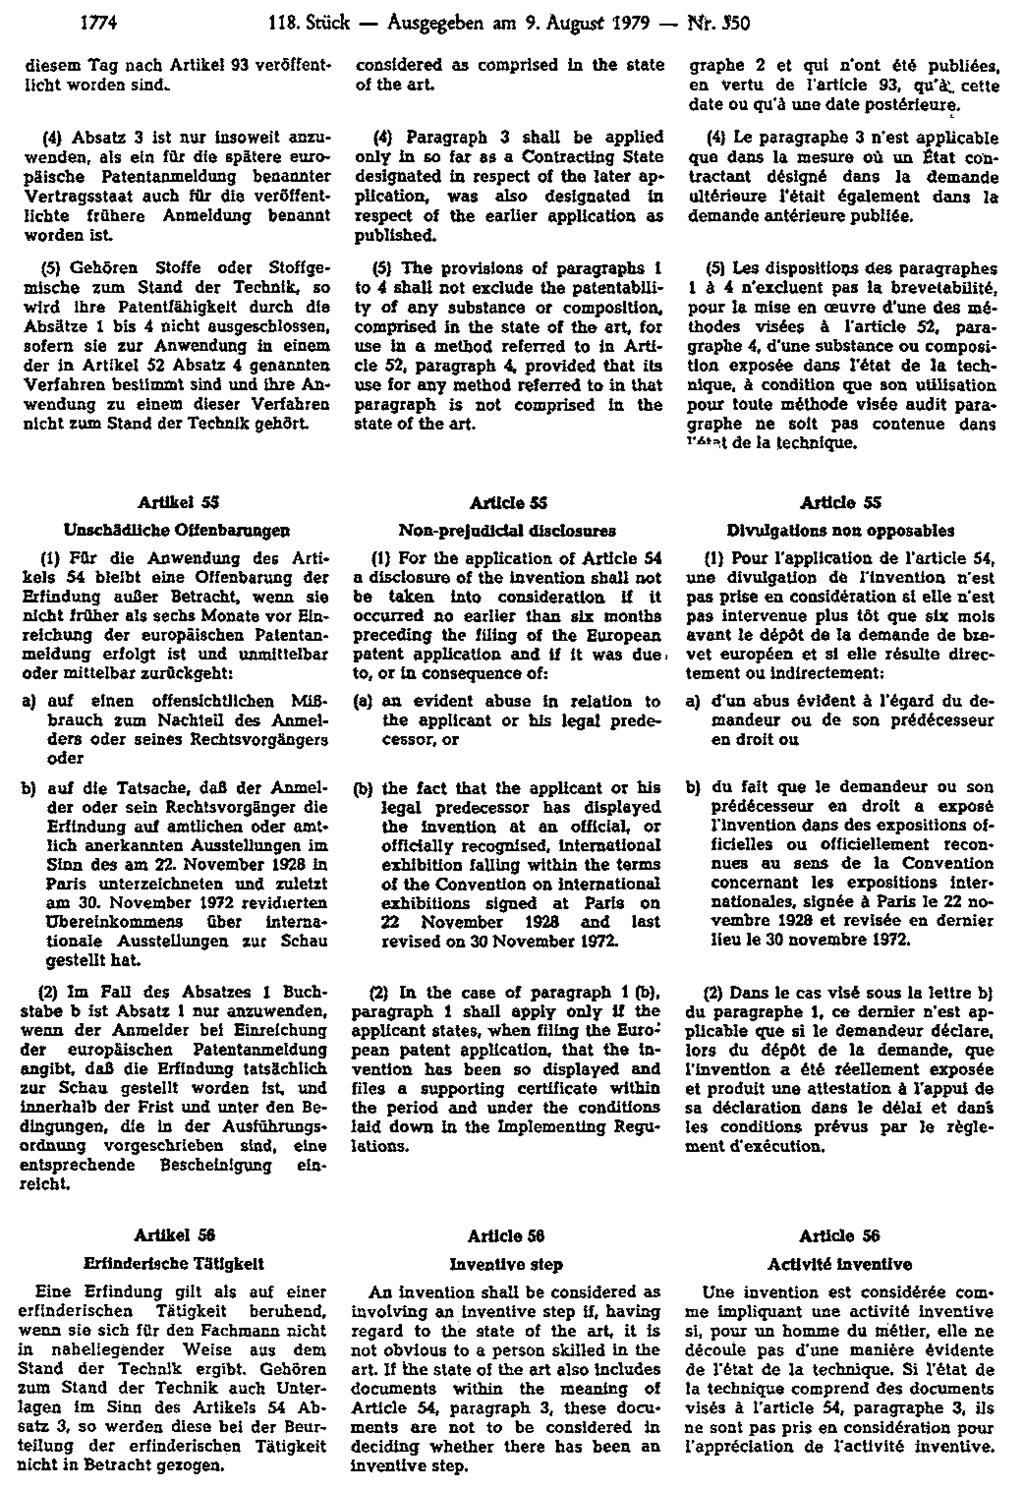 1774 118. Stück Ausgegeben am 9. August 1979 Nr. 350 diesem Tag nach Artikel 93 veröffentlicht worden sind.